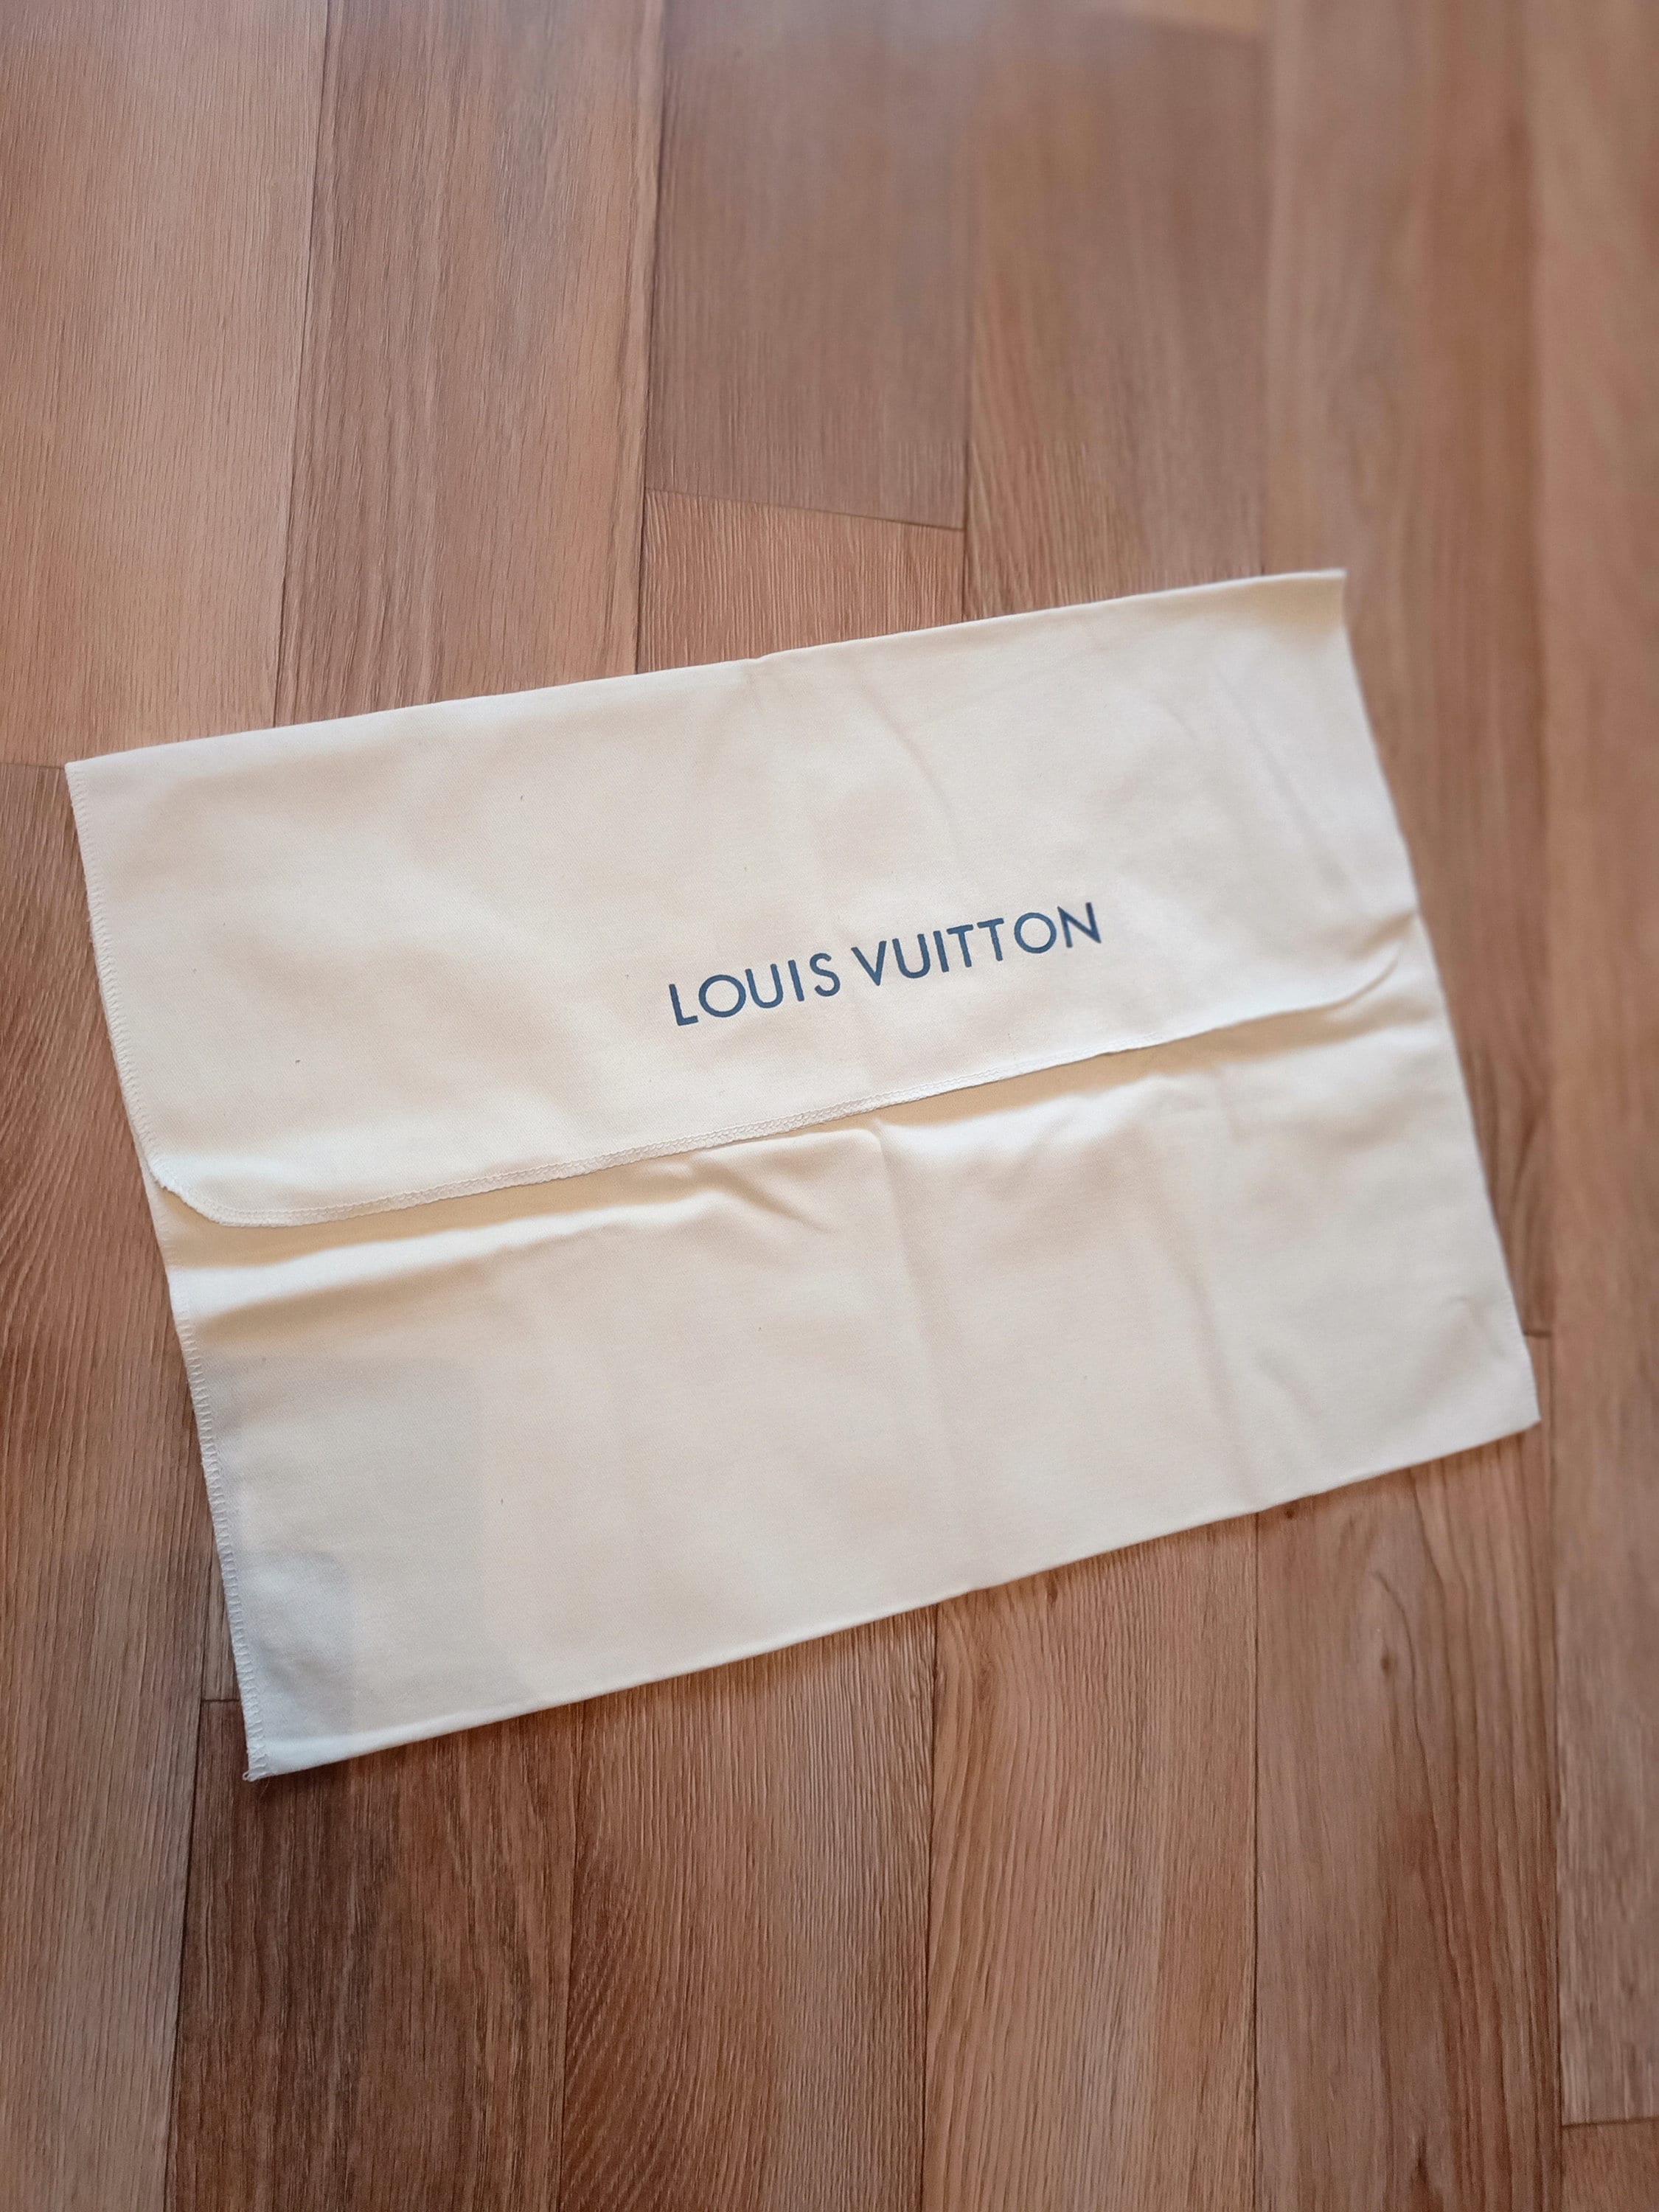 LOUIS VUITTON Vintage authentic Large Louis Vuitton Dust Bag 